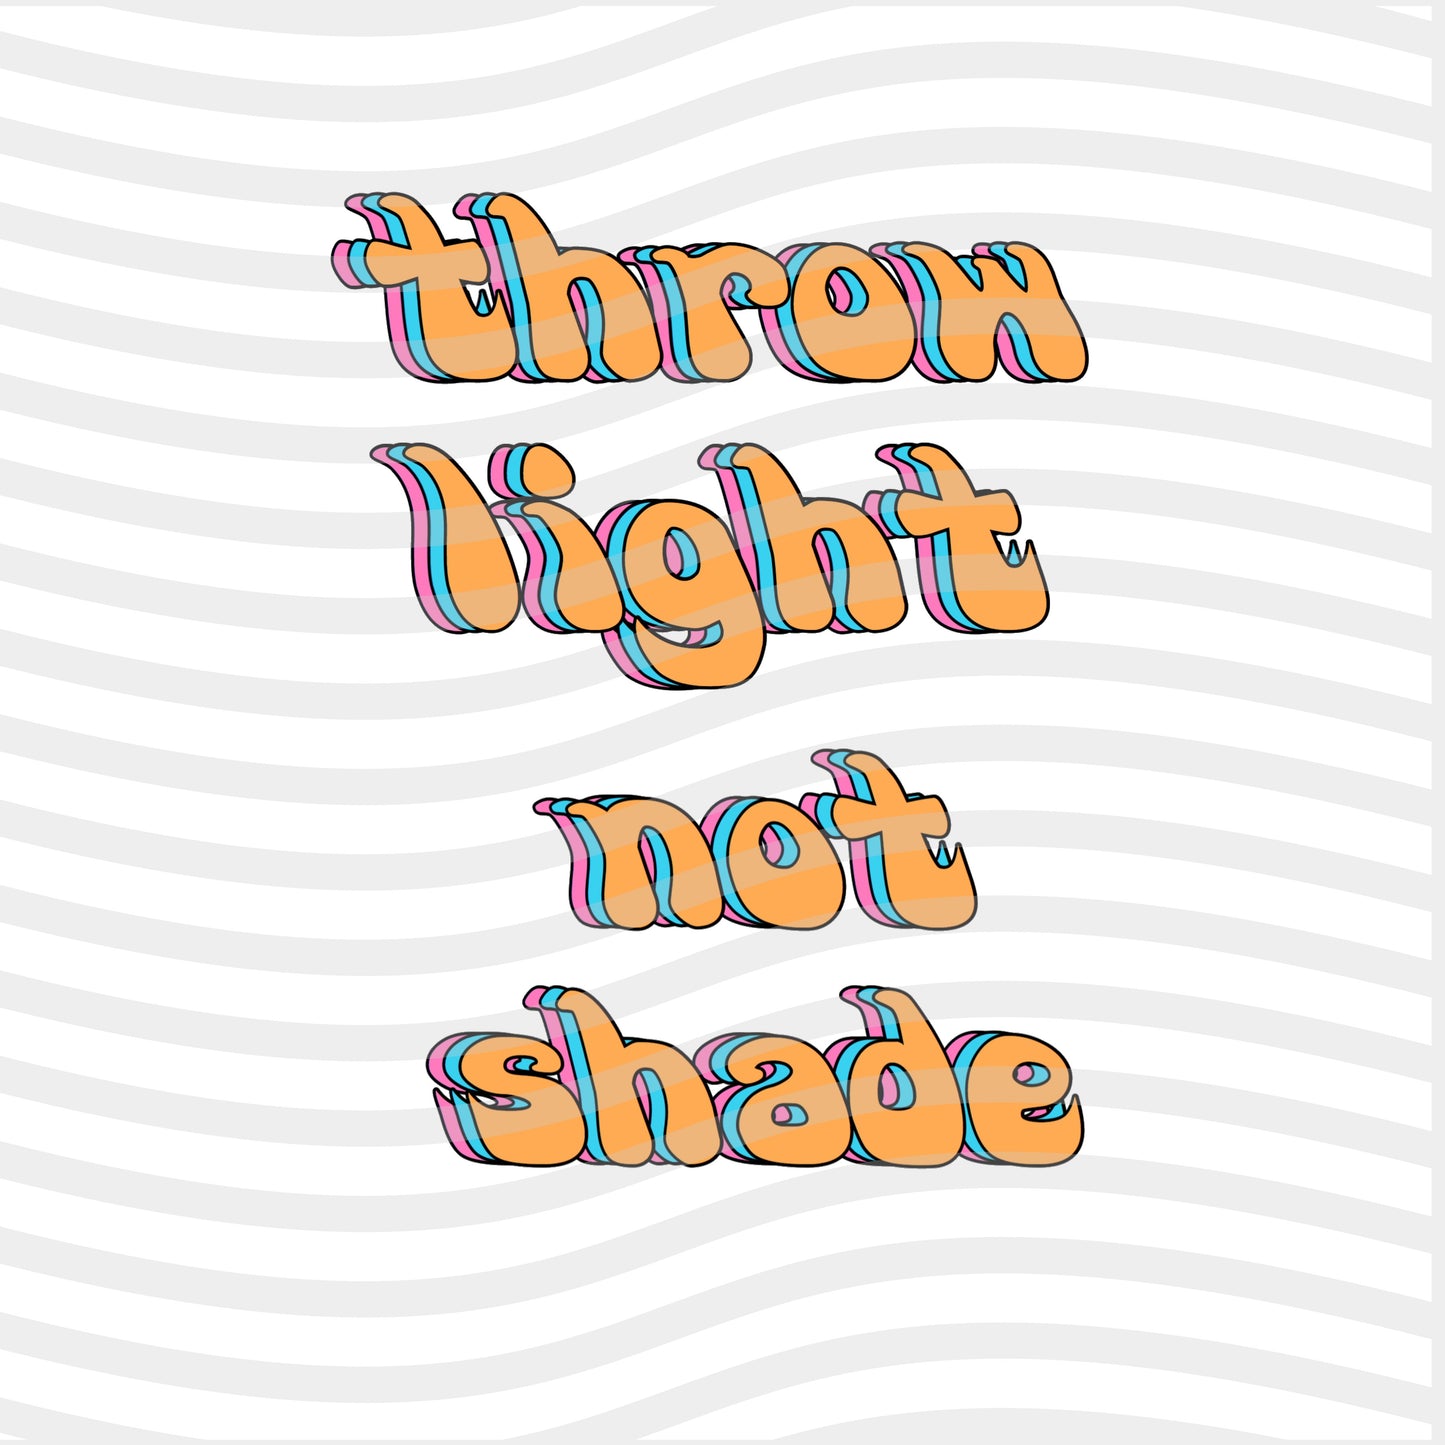 Light not shade